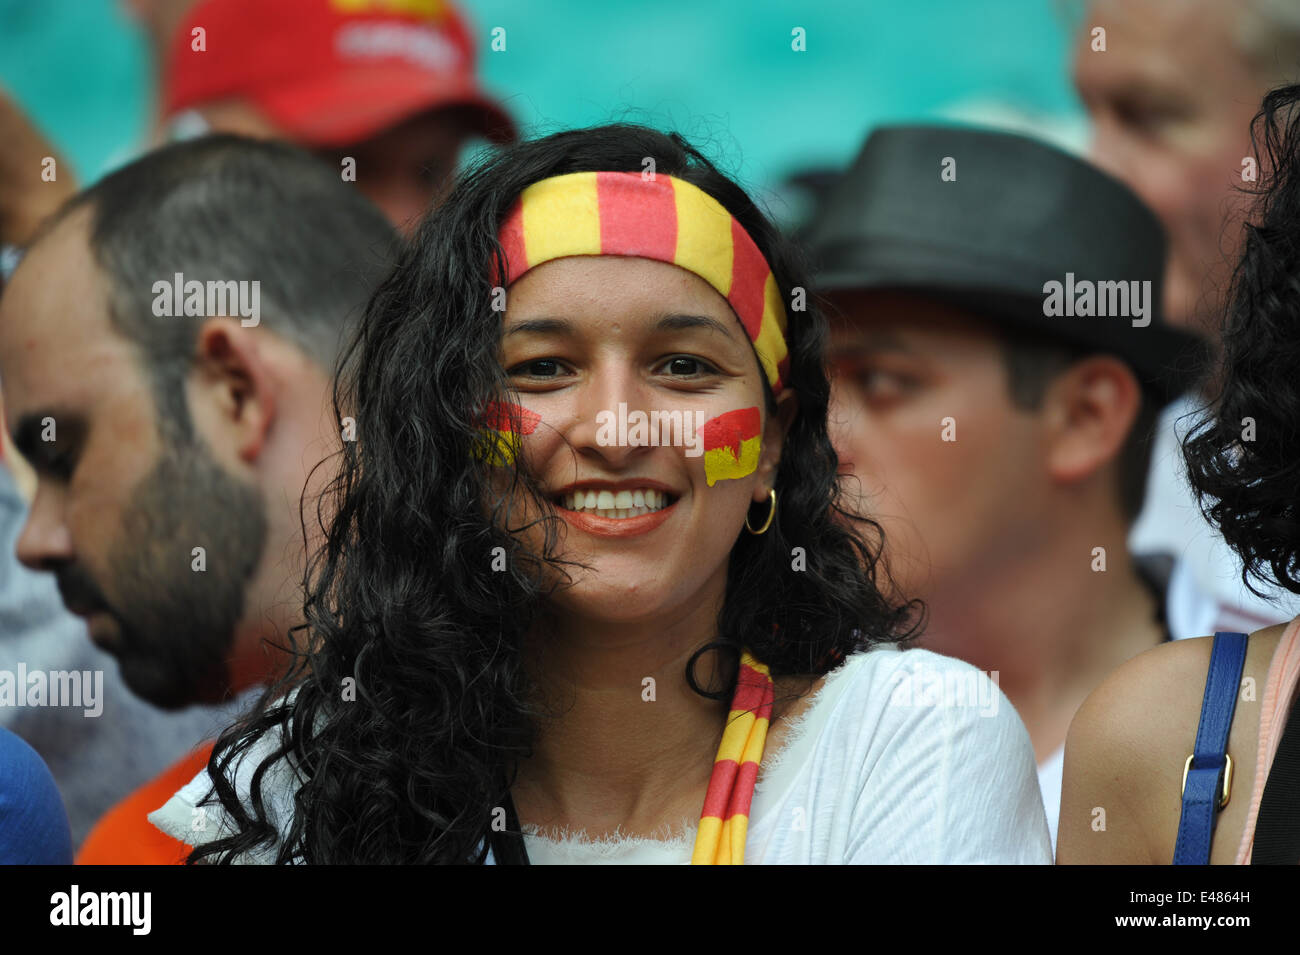 Coupe du monde de Fiifa 2014, supporters espagnols, Brésil Banque D'Images